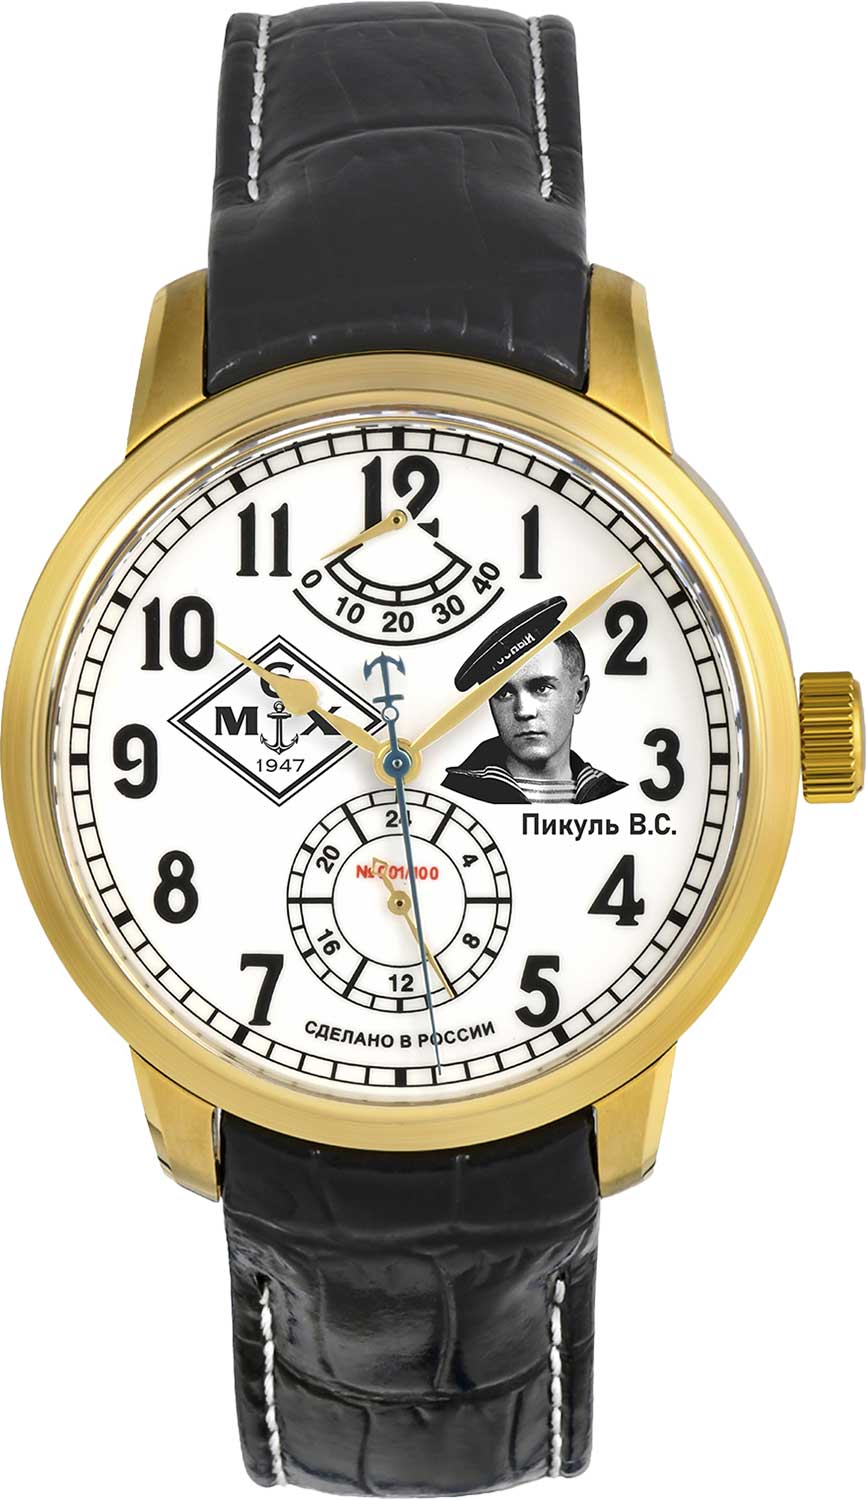 Наручные часы 6МХ 9132/777.6.718-VALENTIN-PIKUL — купить в интернет-магазине AllTime.ru по лучшей цене, фото, характеристики, инструкция, описание